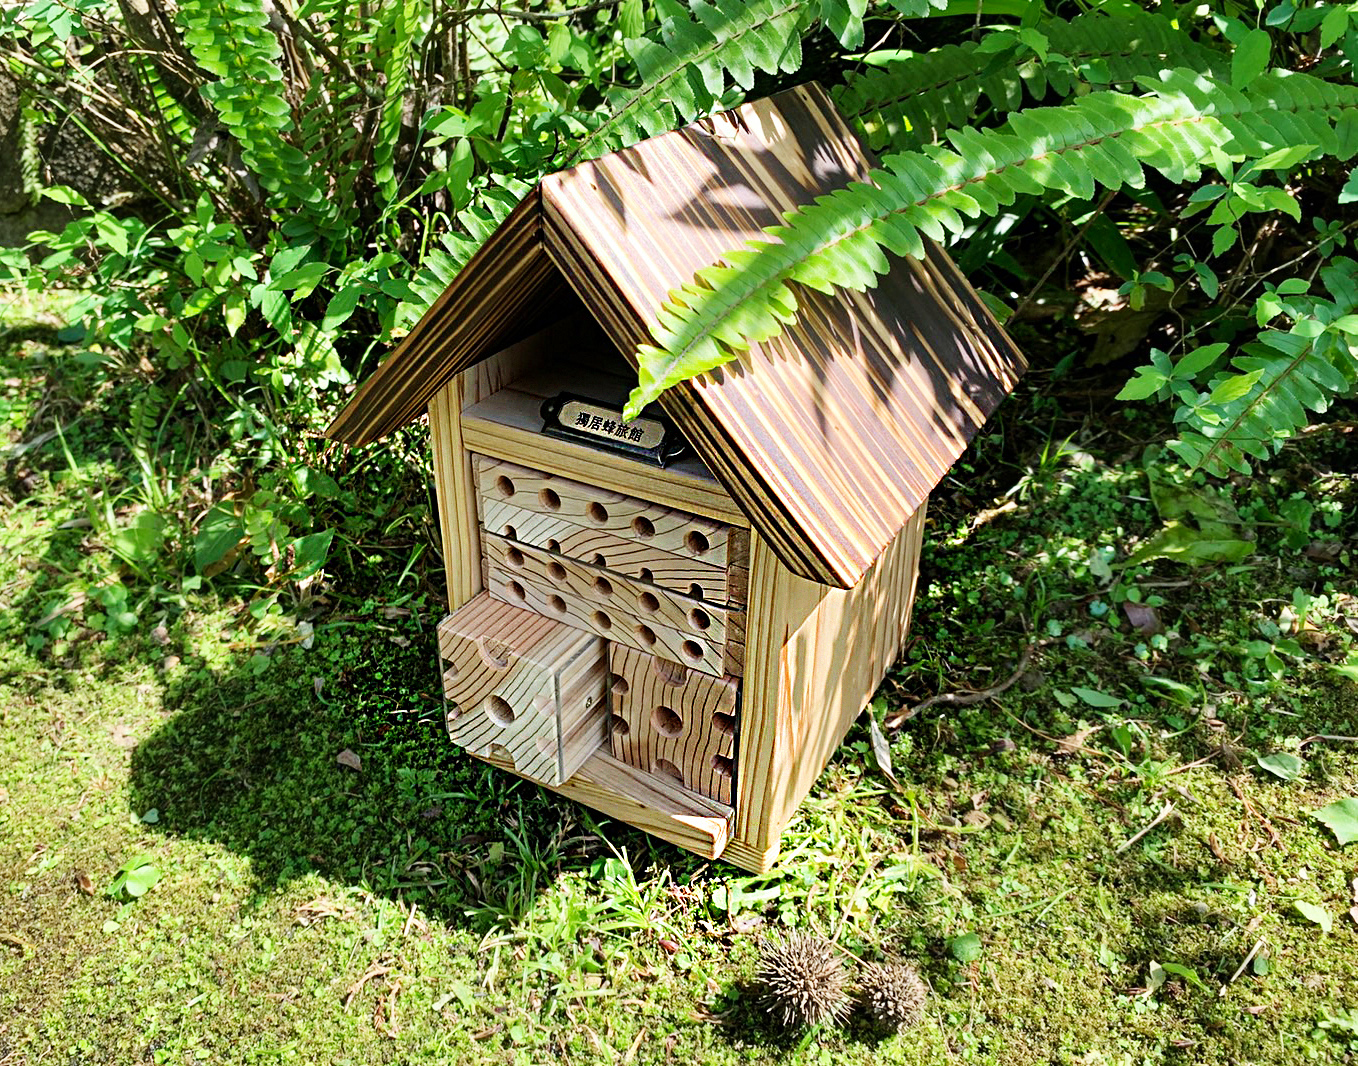 「獨居蜂旅館」是為了讓現代環境中棲地遭破壞的獨居蜂能棲息繁衍而創造的容身之器